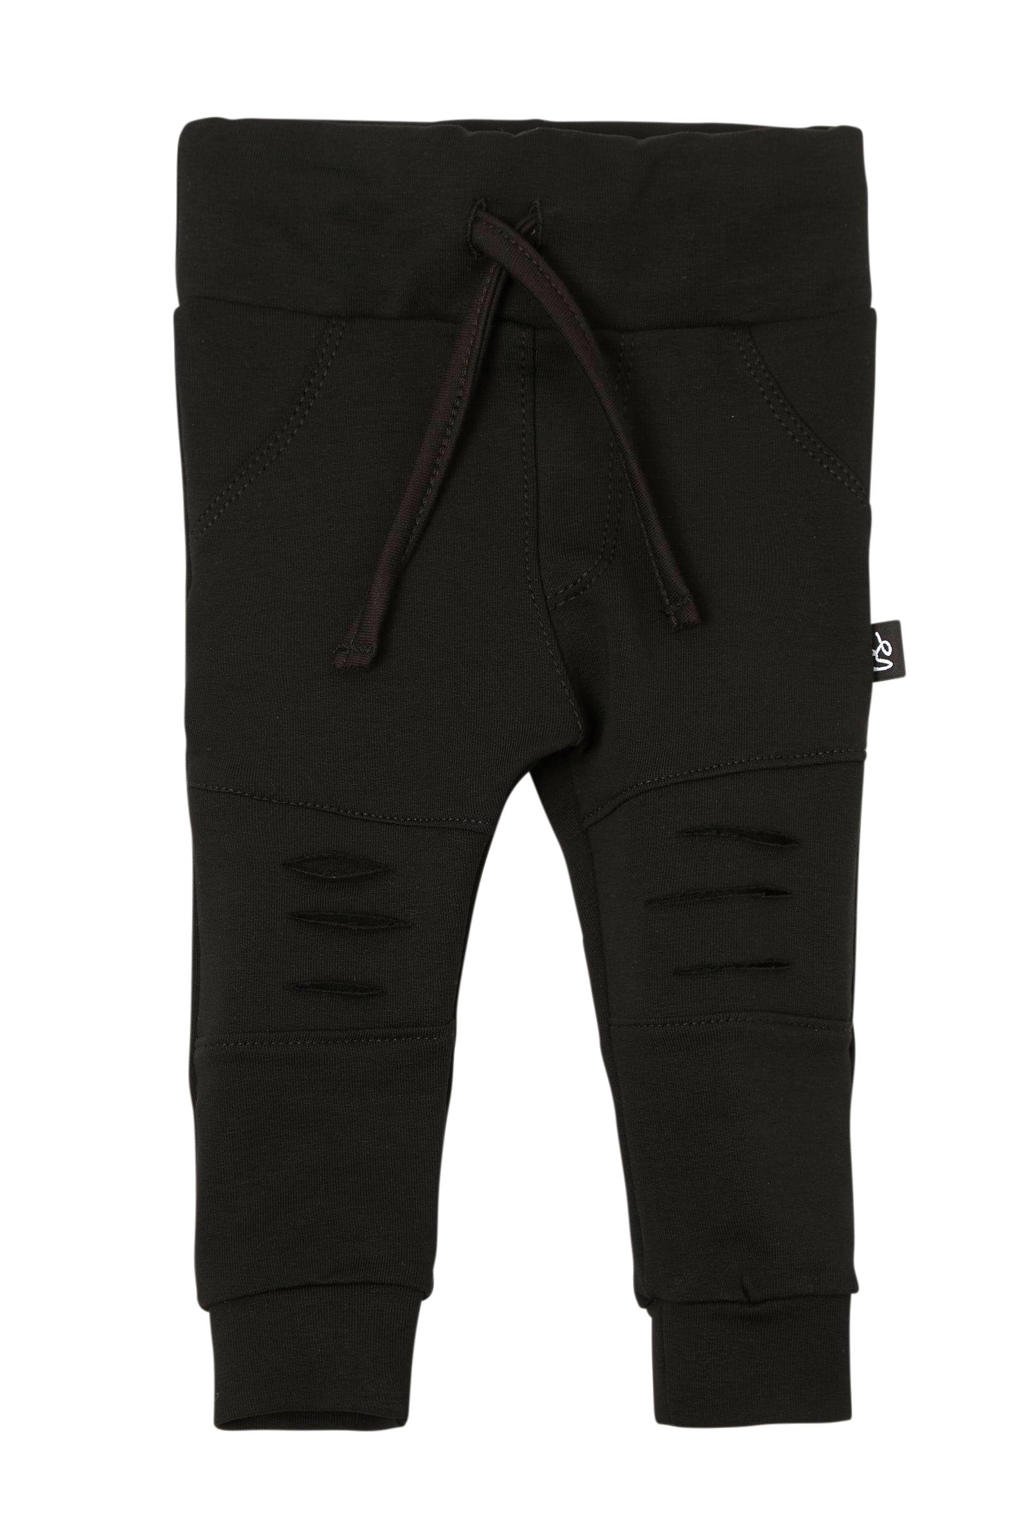 Zwarte jongens Babystyling broek van stretchkatoen met elastische tailleband